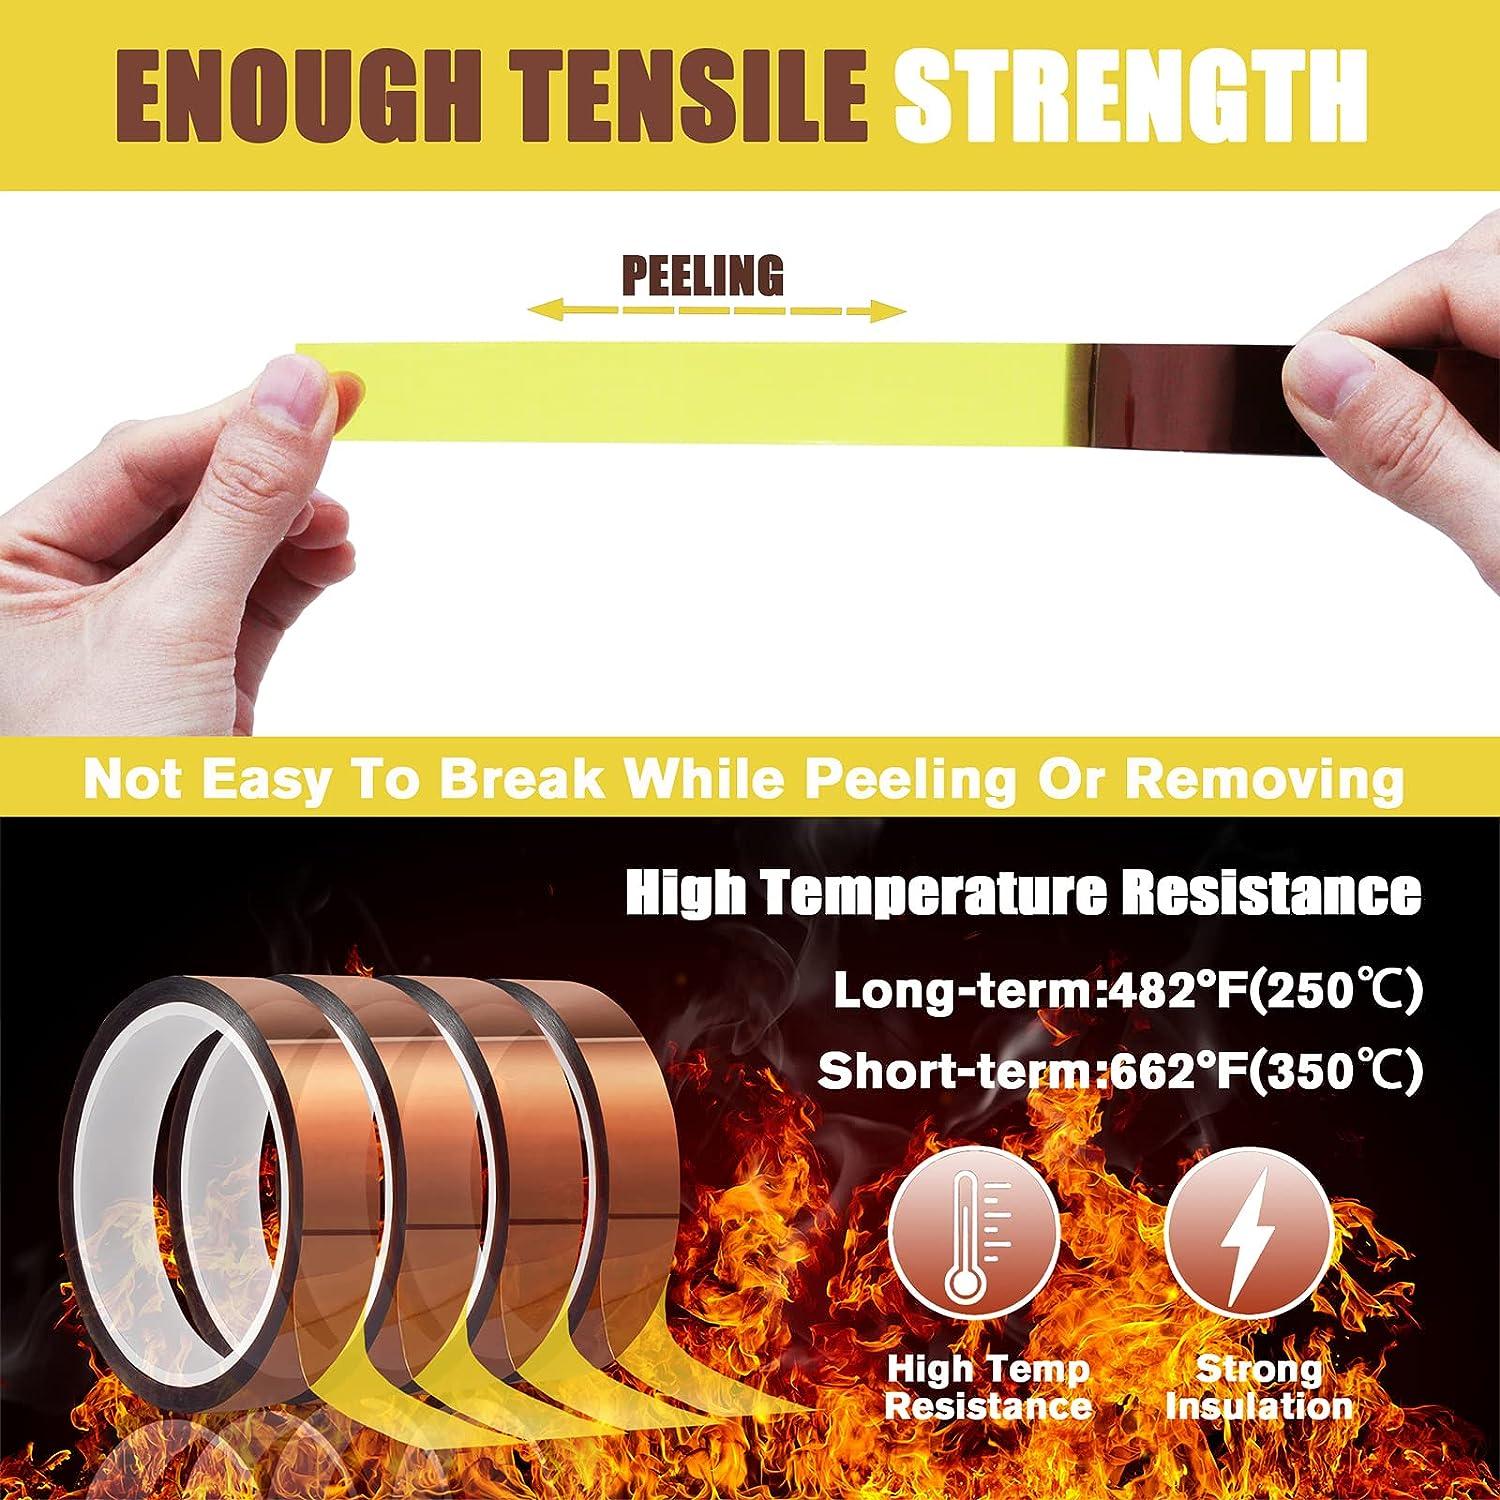 Heat Resistant Tape .75/2cm/20mm Wide – Sublimate4less